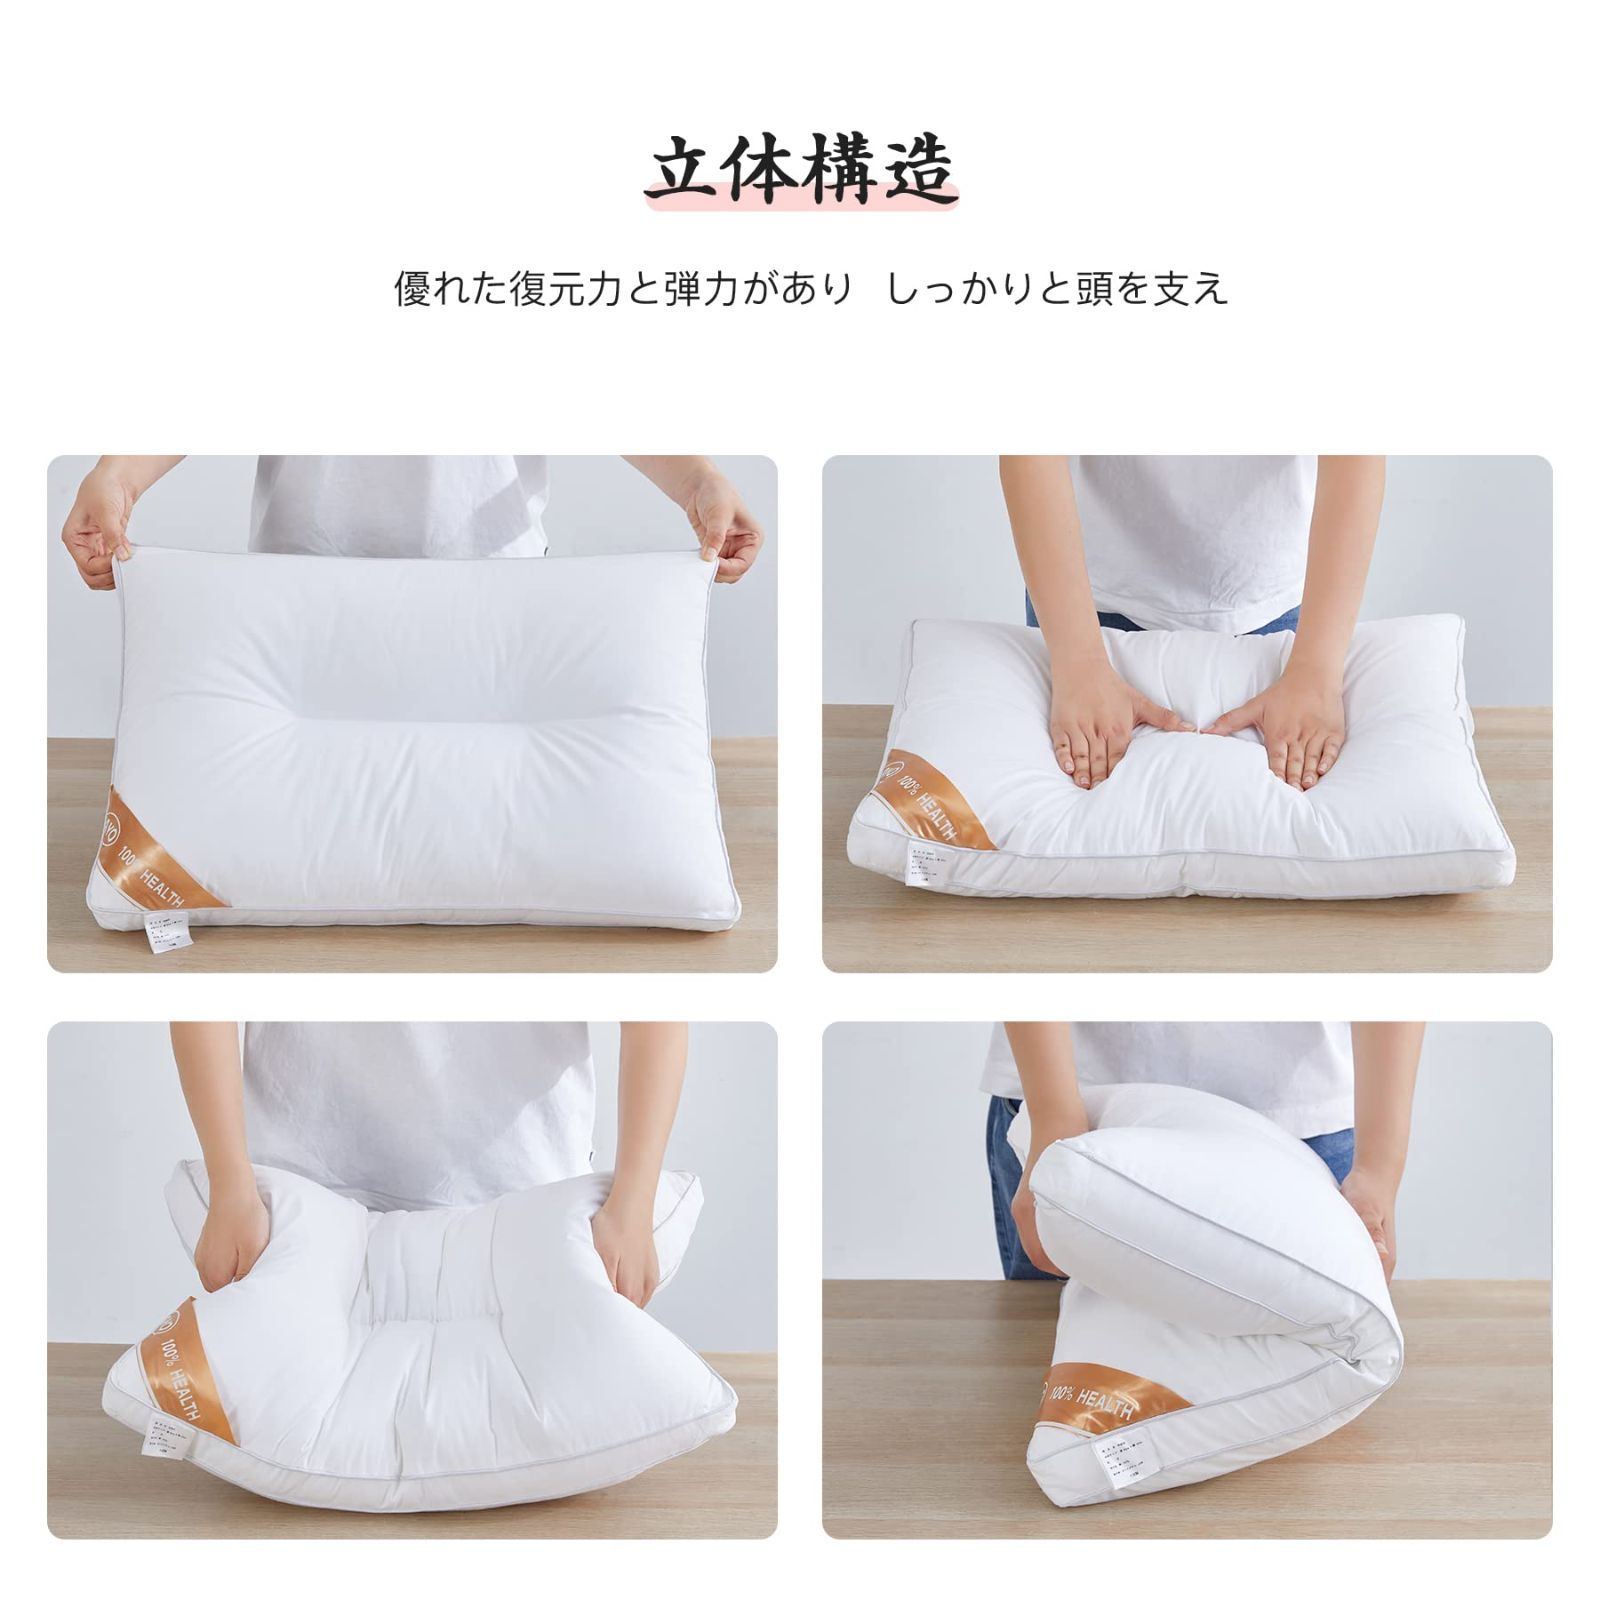 新品 AYO 枕 低反発まくら 高級ホテル仕様 丸洗い可能 高さ調節可能